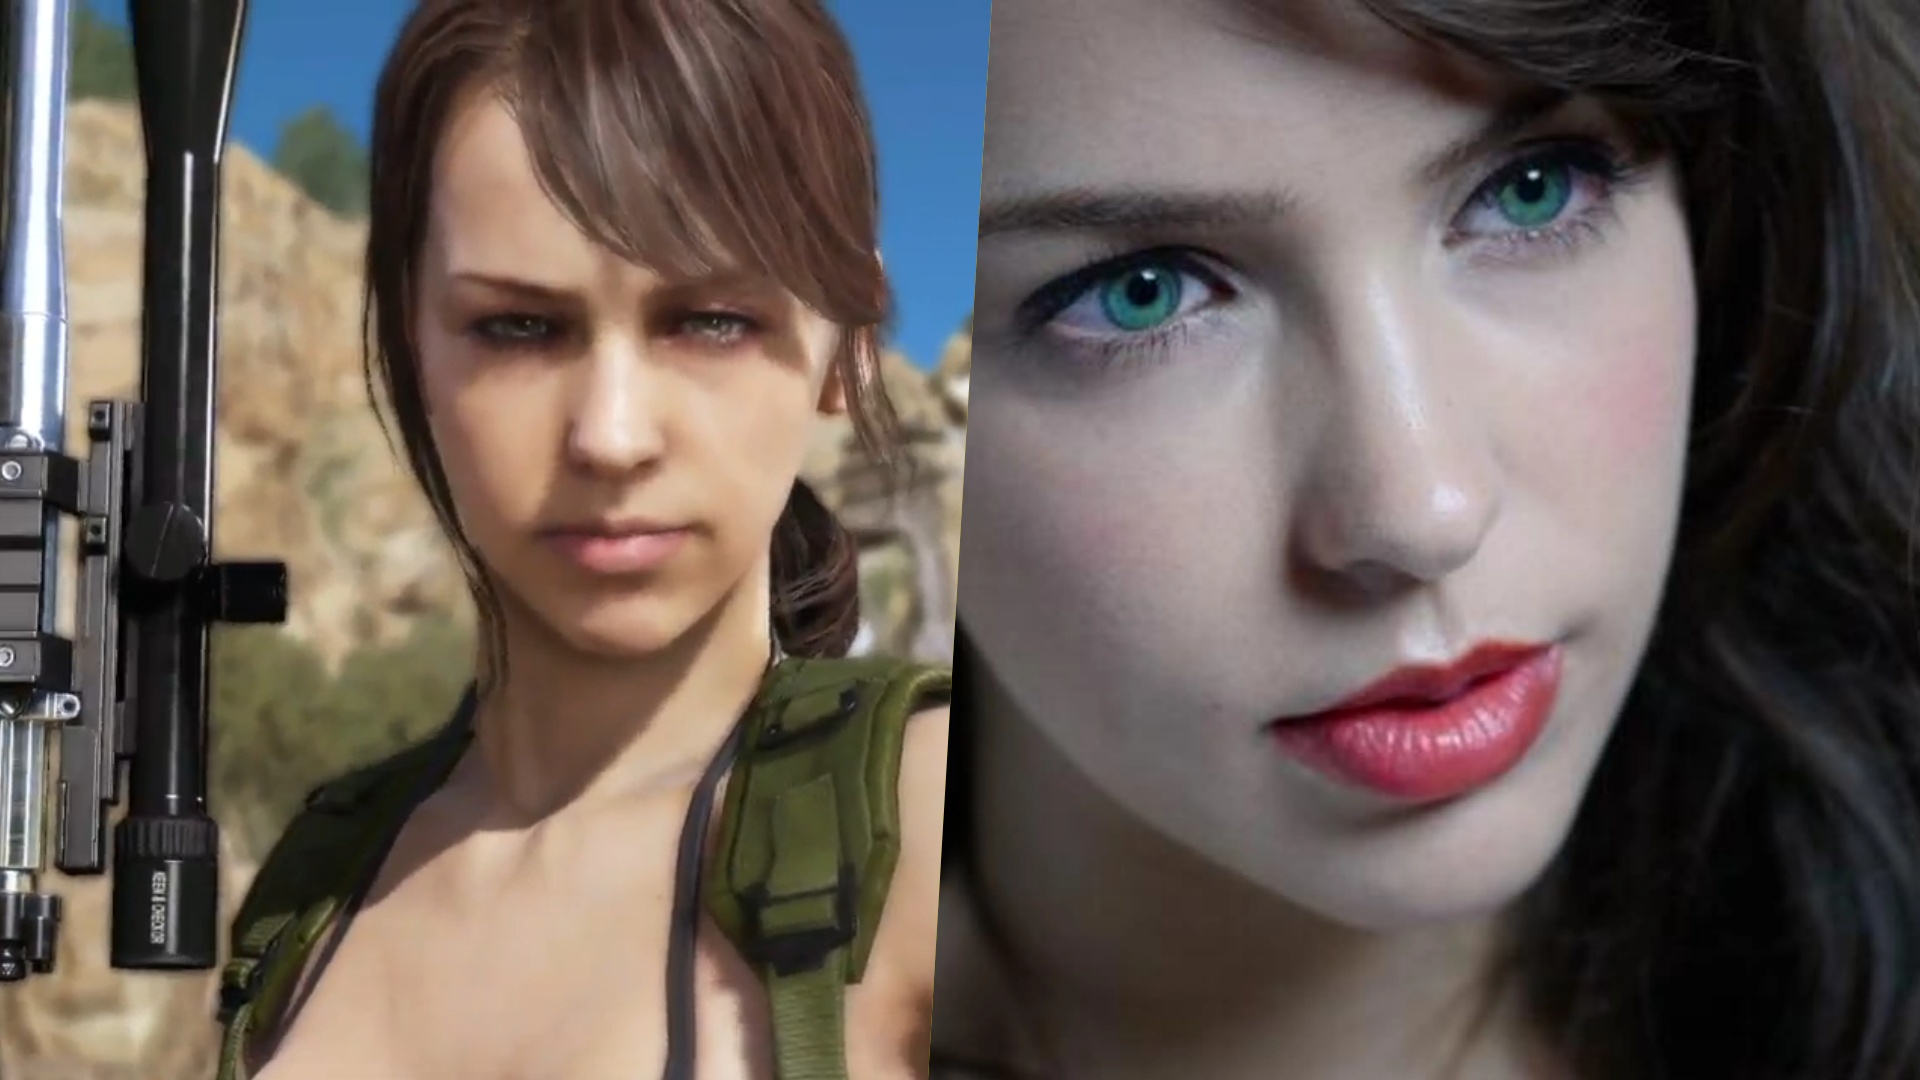 Metal Gear Solid 5 Quiet actor says her character design was 'not